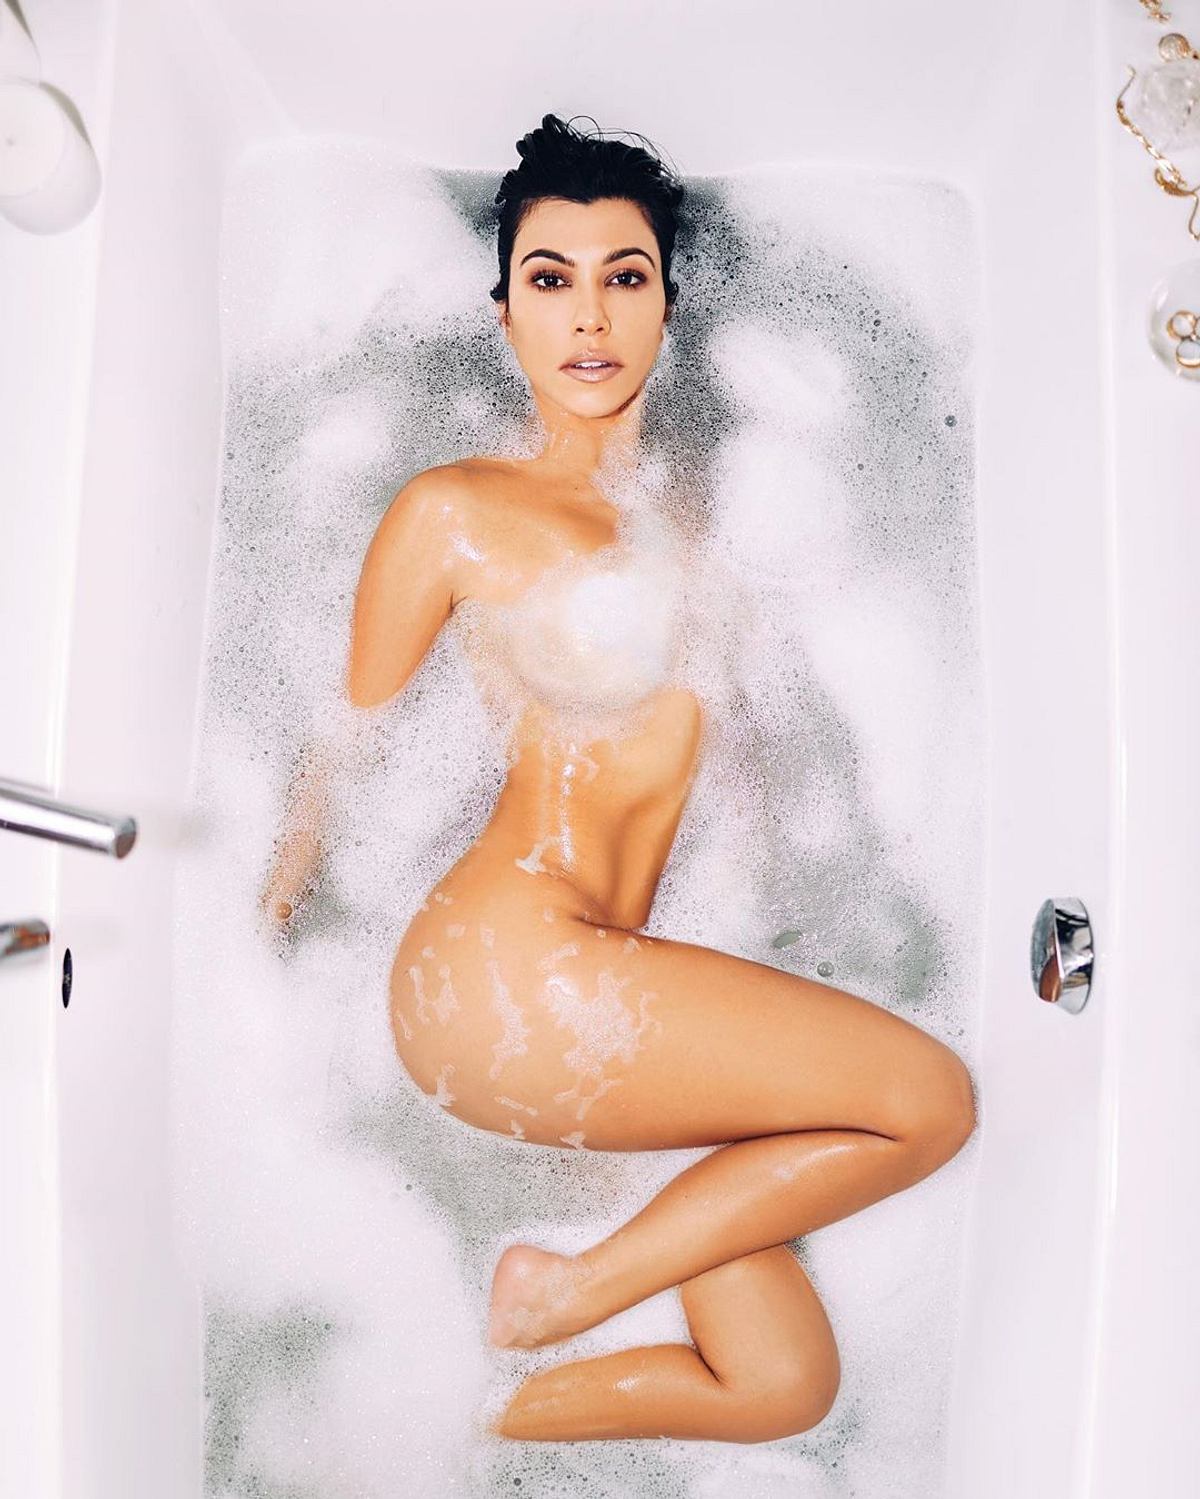 Die Insta-Nacktbilder der Stars Kourtney Kardashian